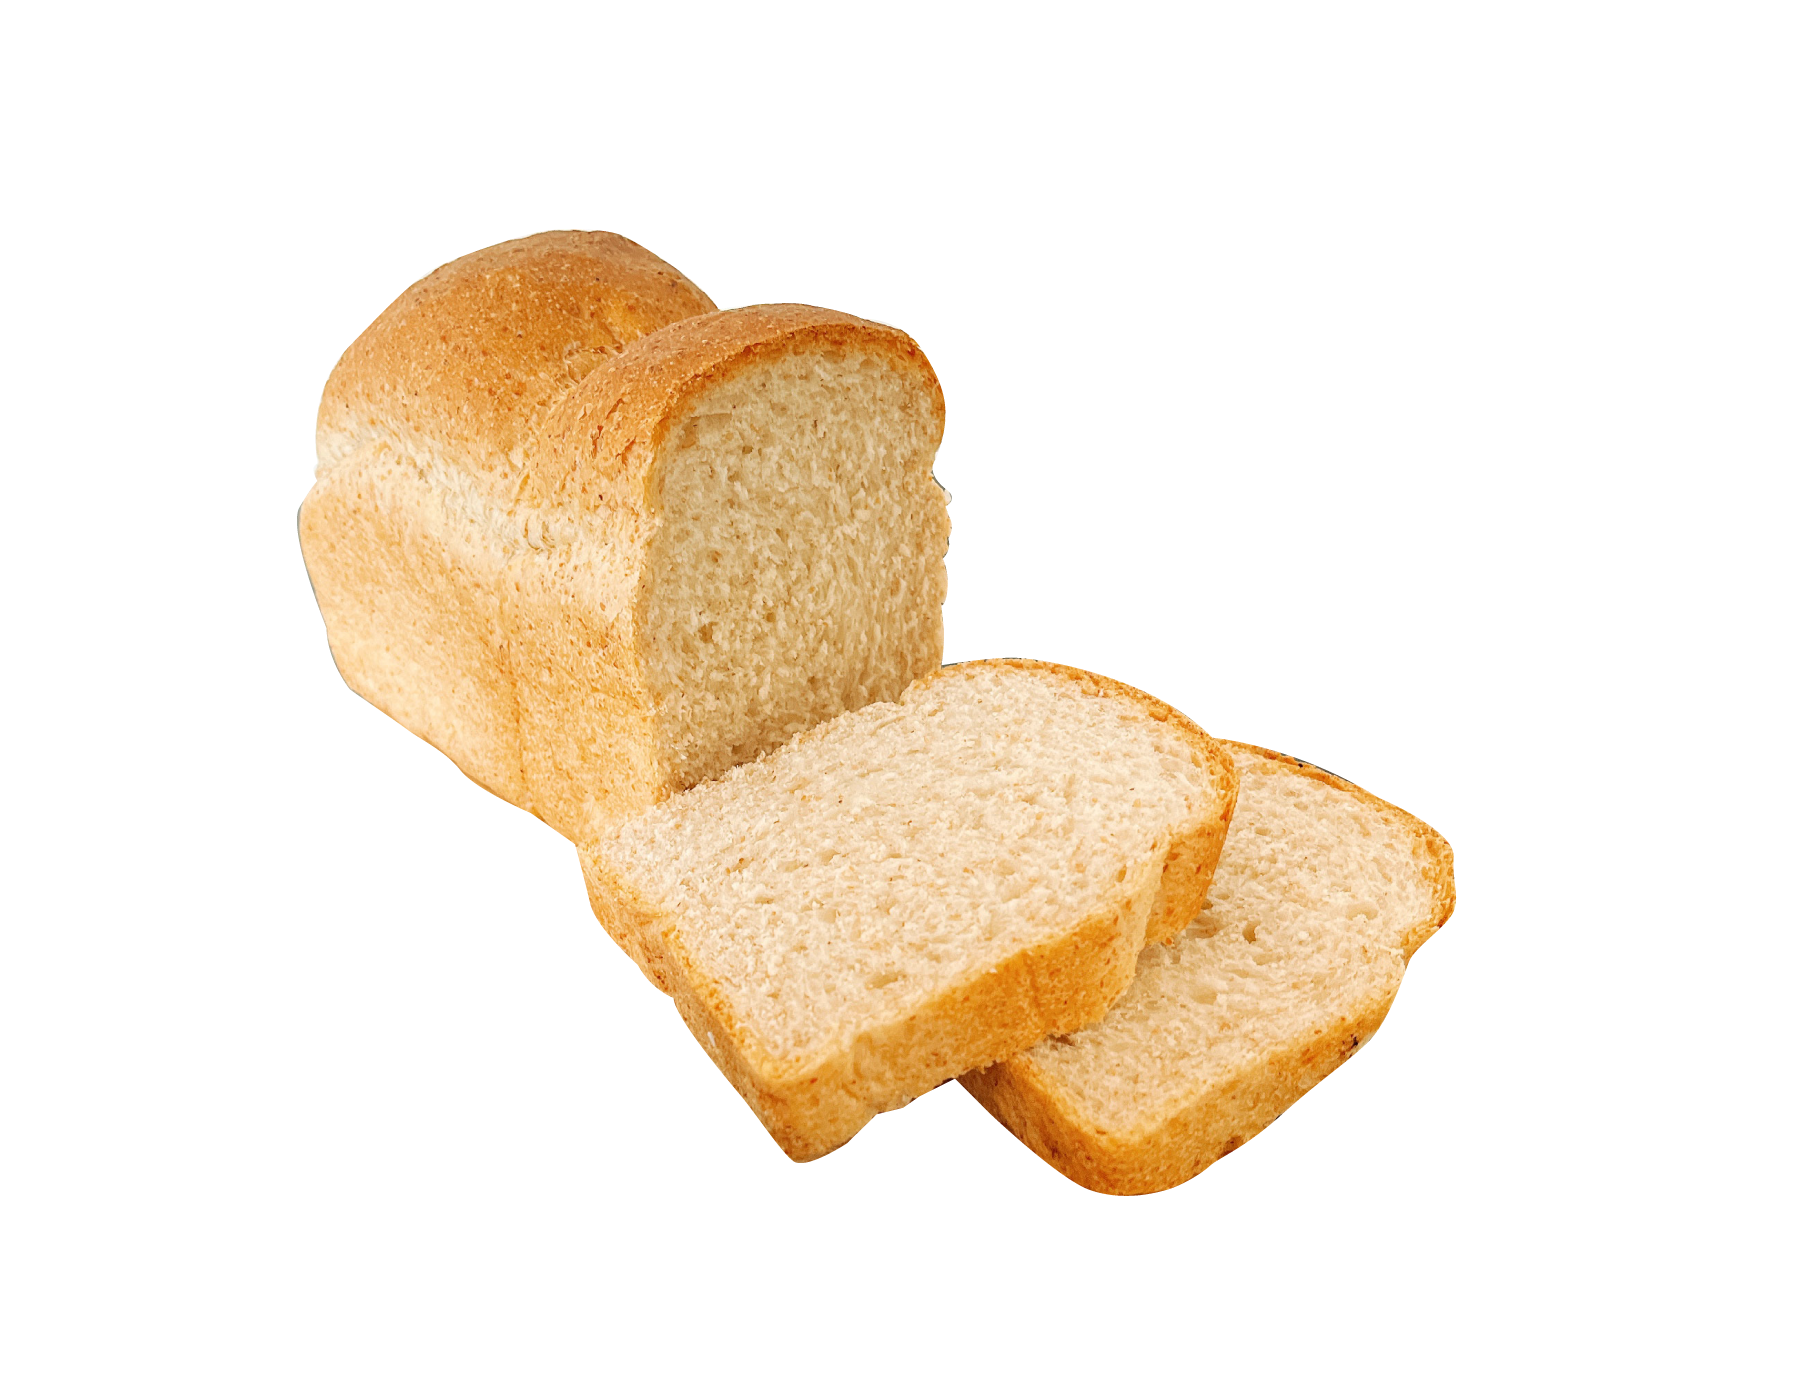 牛乳食パン